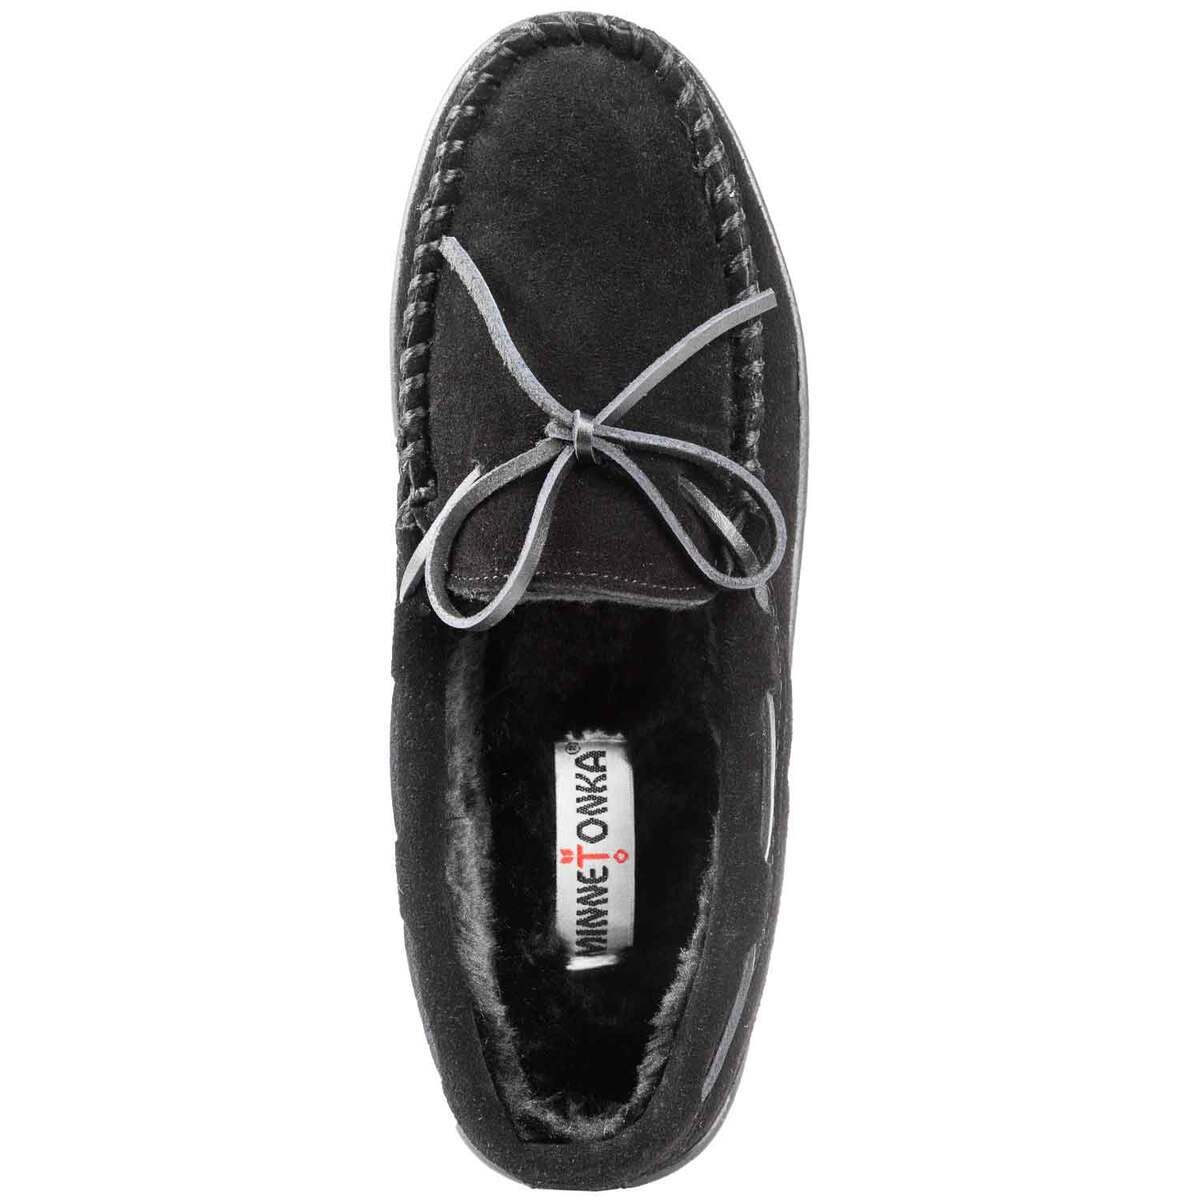 Minnetonka Men's Wide Piled Lined Hardsole Slippers - Black - Size 9W ...